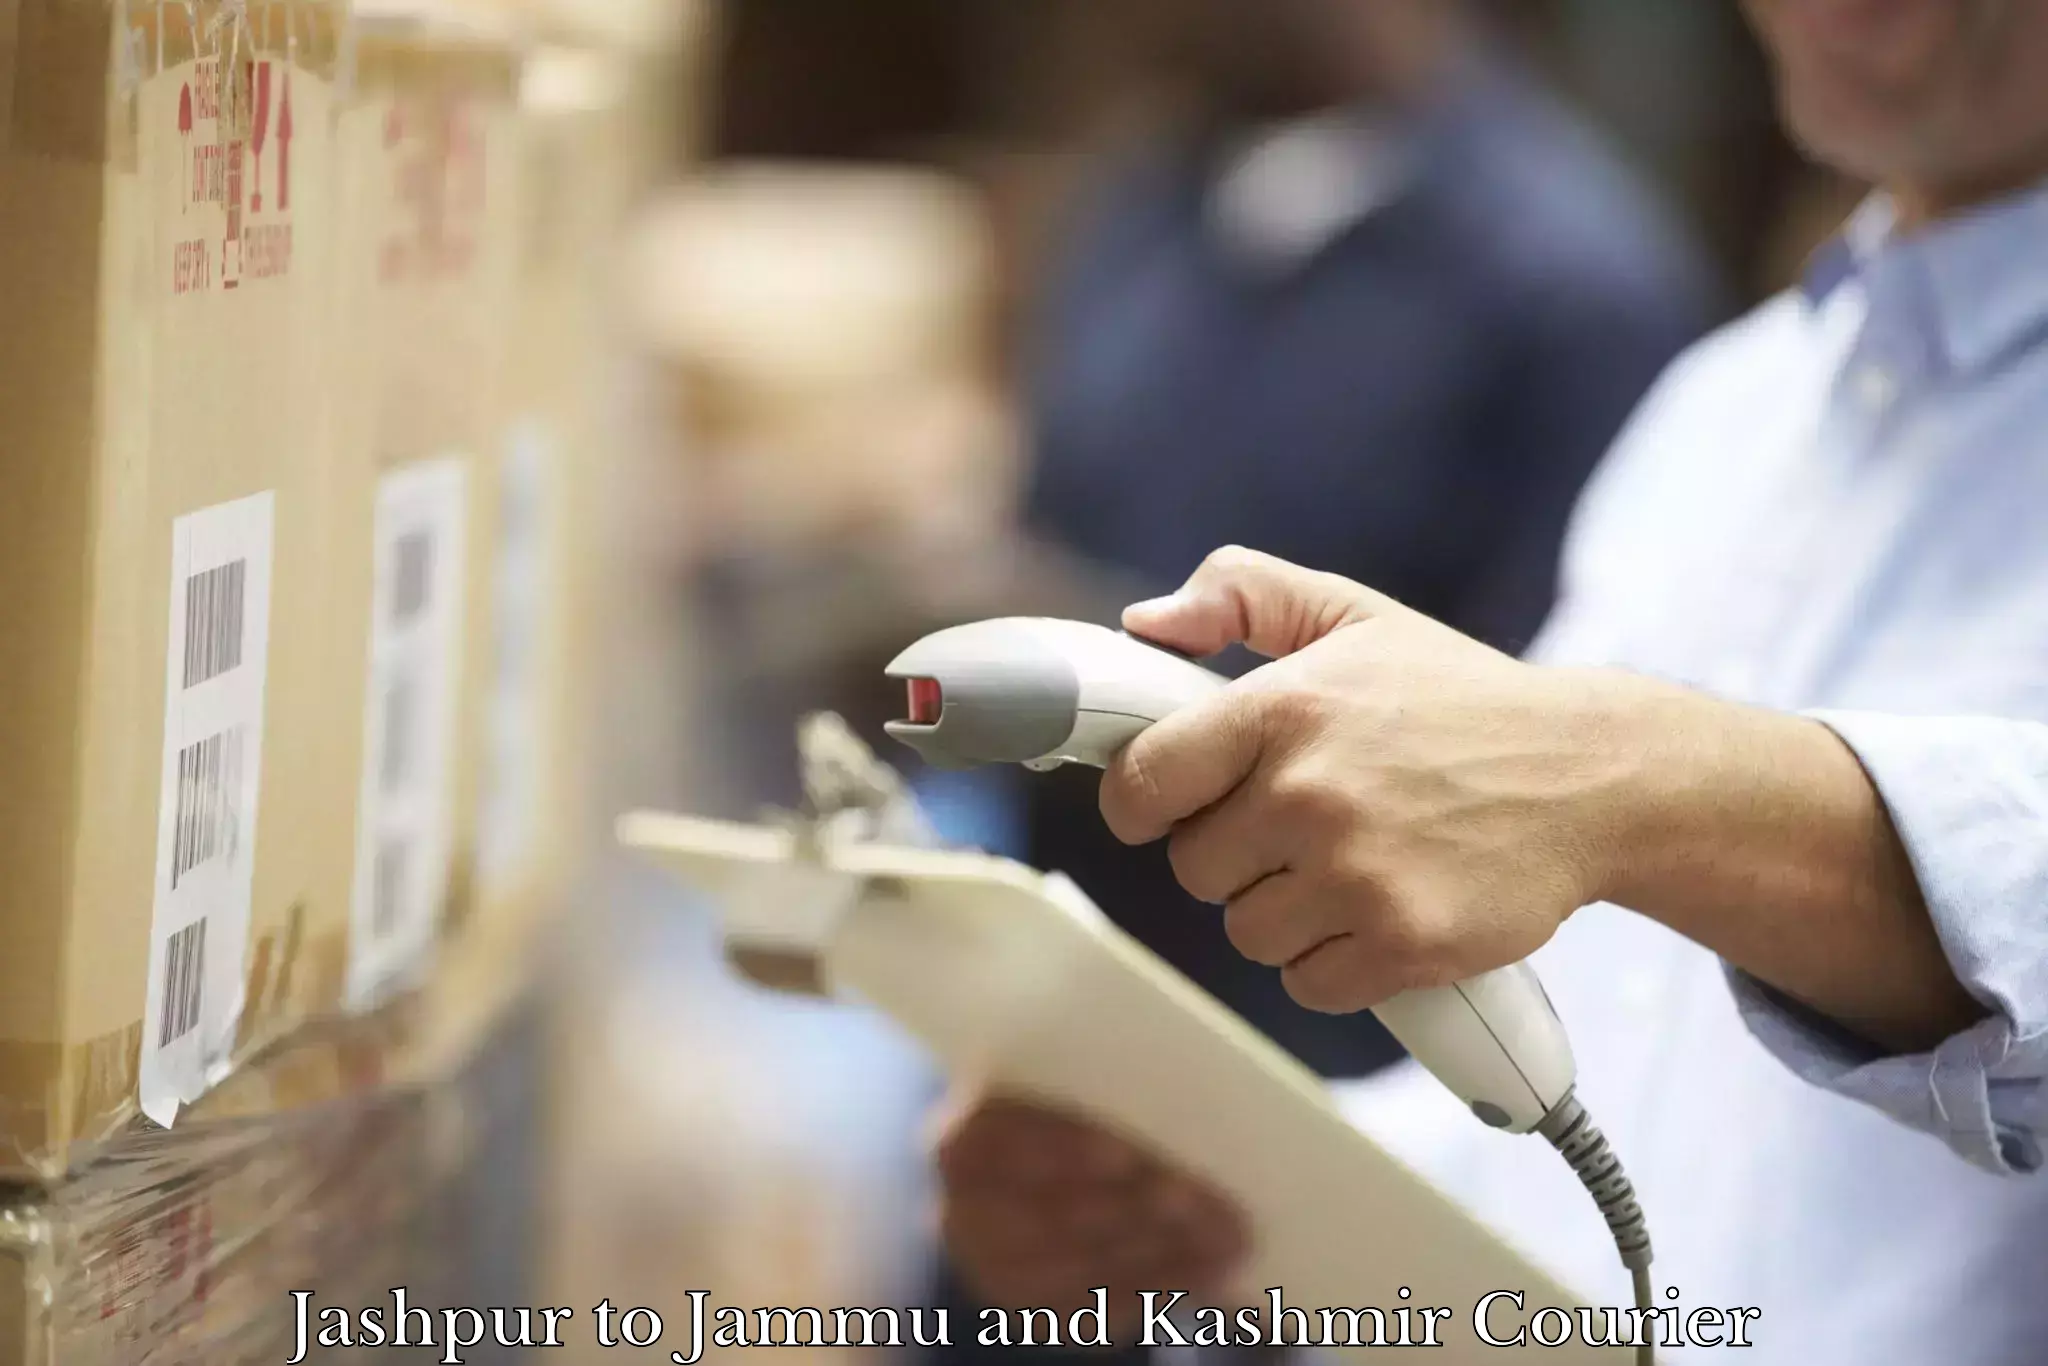 High-capacity parcel service Jashpur to Jammu